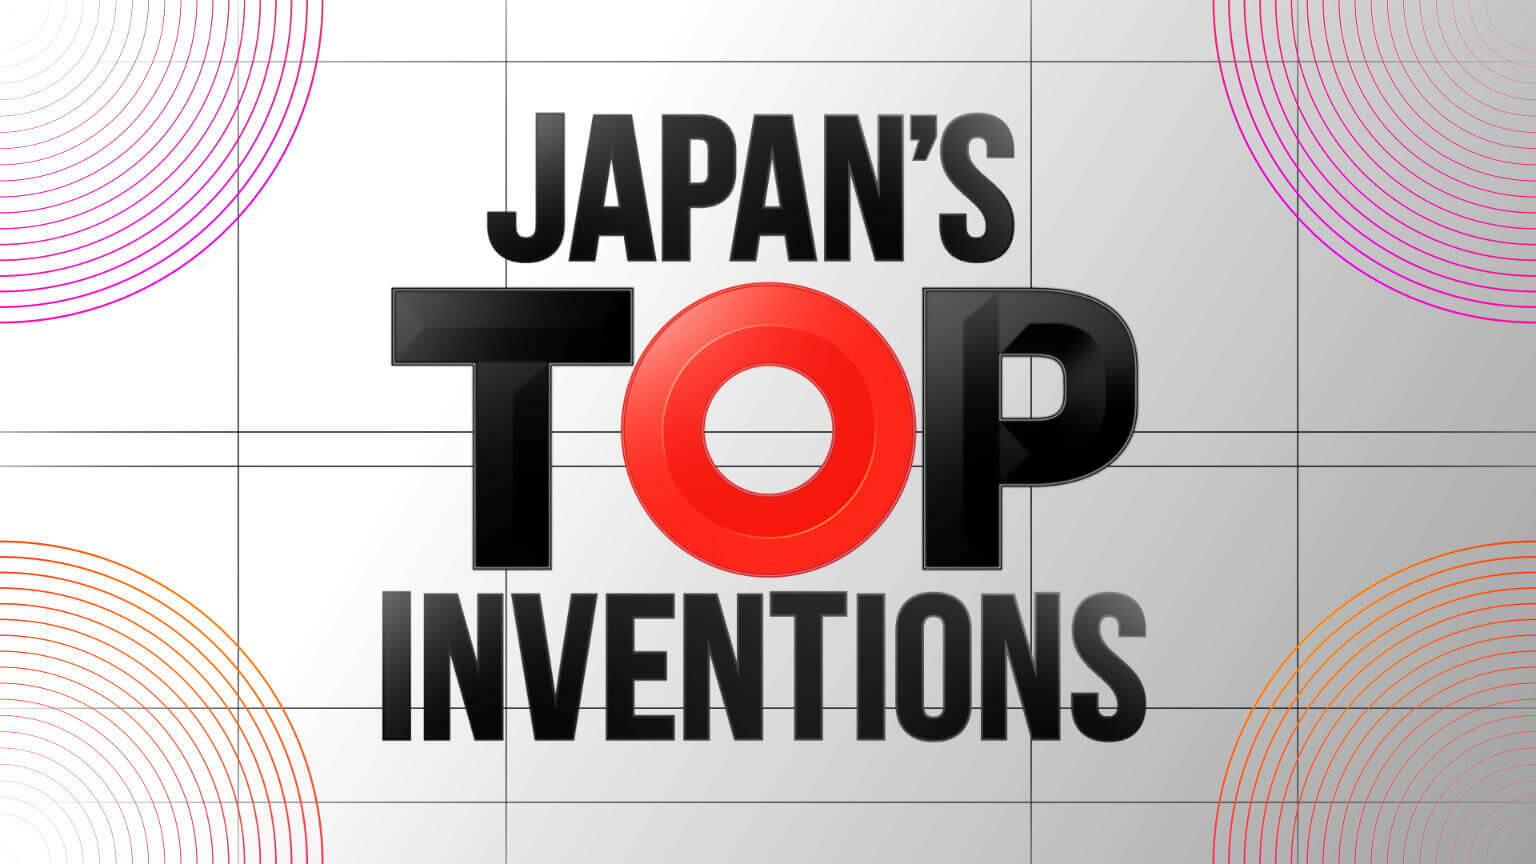 สุดยอดนวัตกรรมของญี่ปุ่น
Japan's Top Inventions